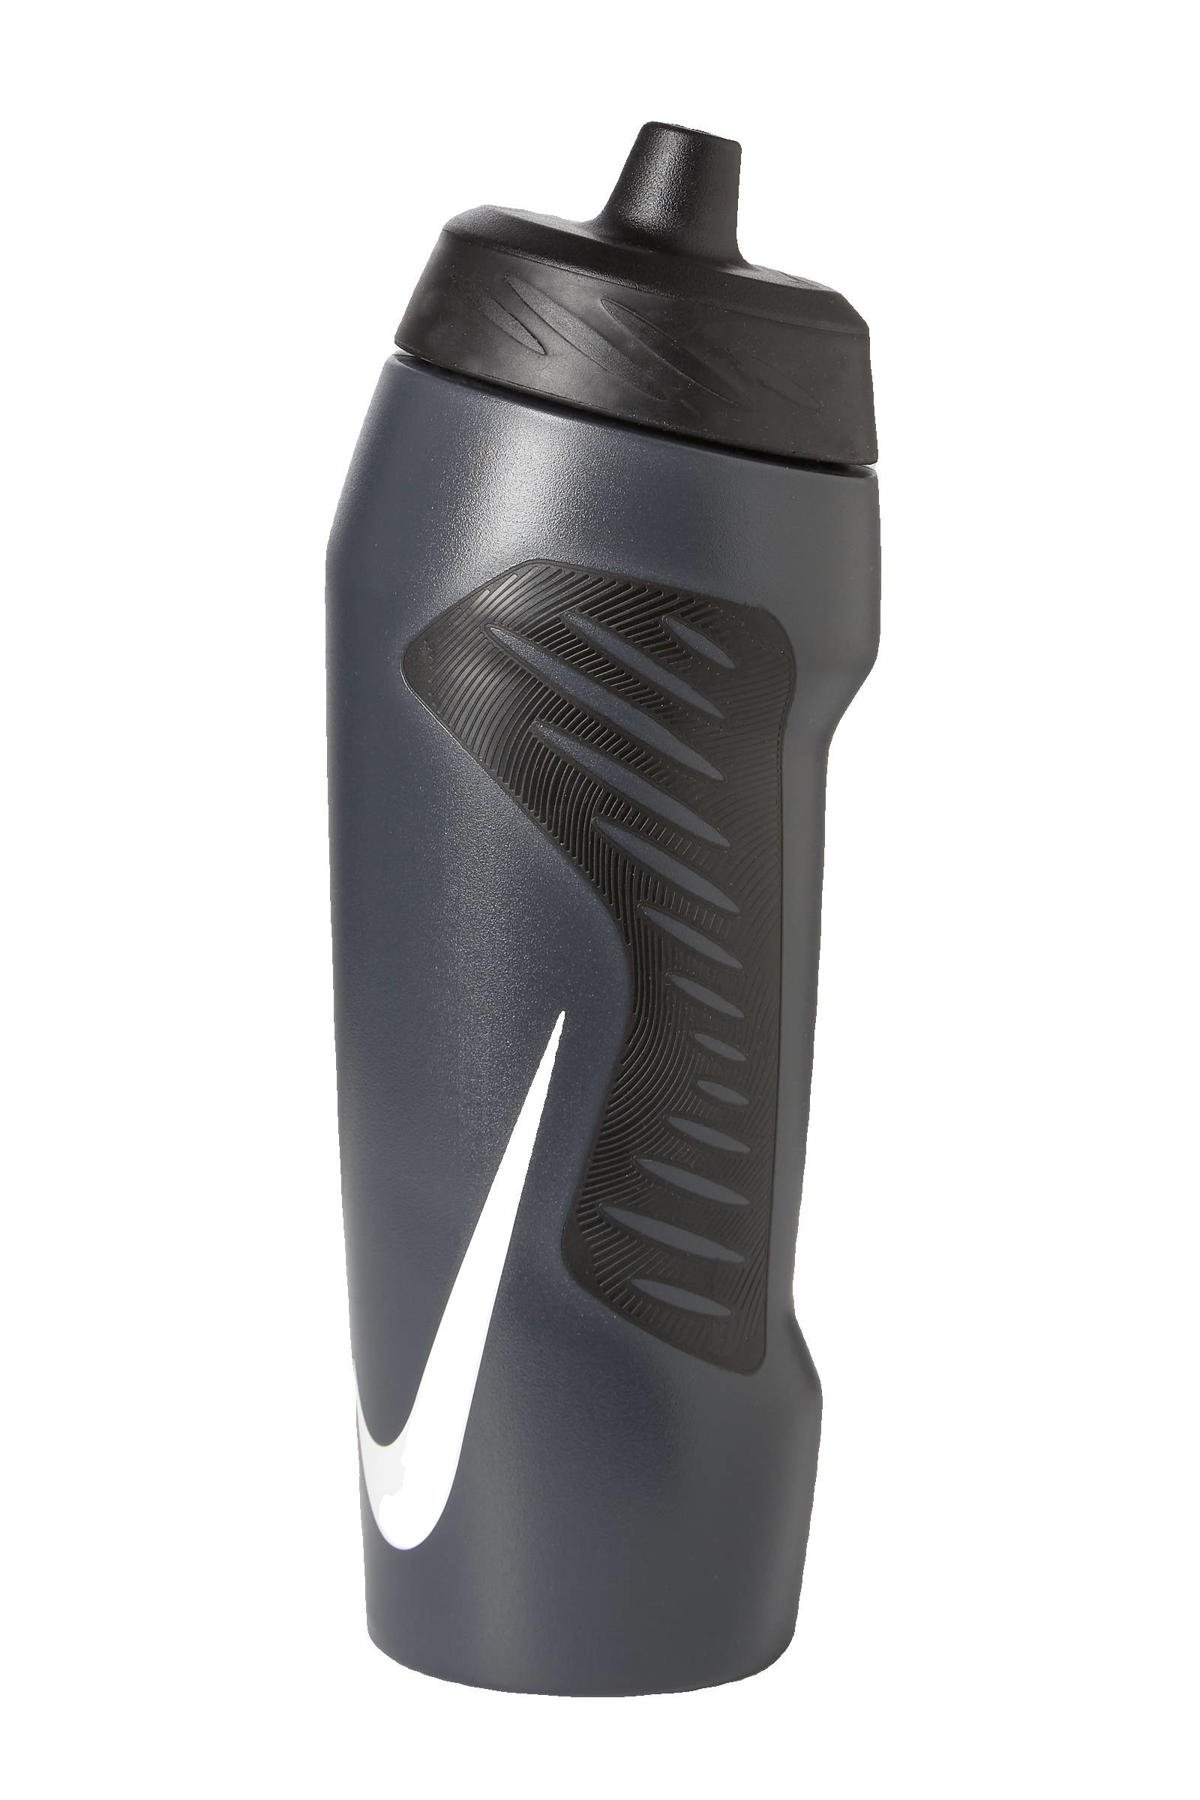 Merchandiser Tijdreeksen Chemicaliën Nike sportbidon - 710 ml grijs/zwart | wehkamp